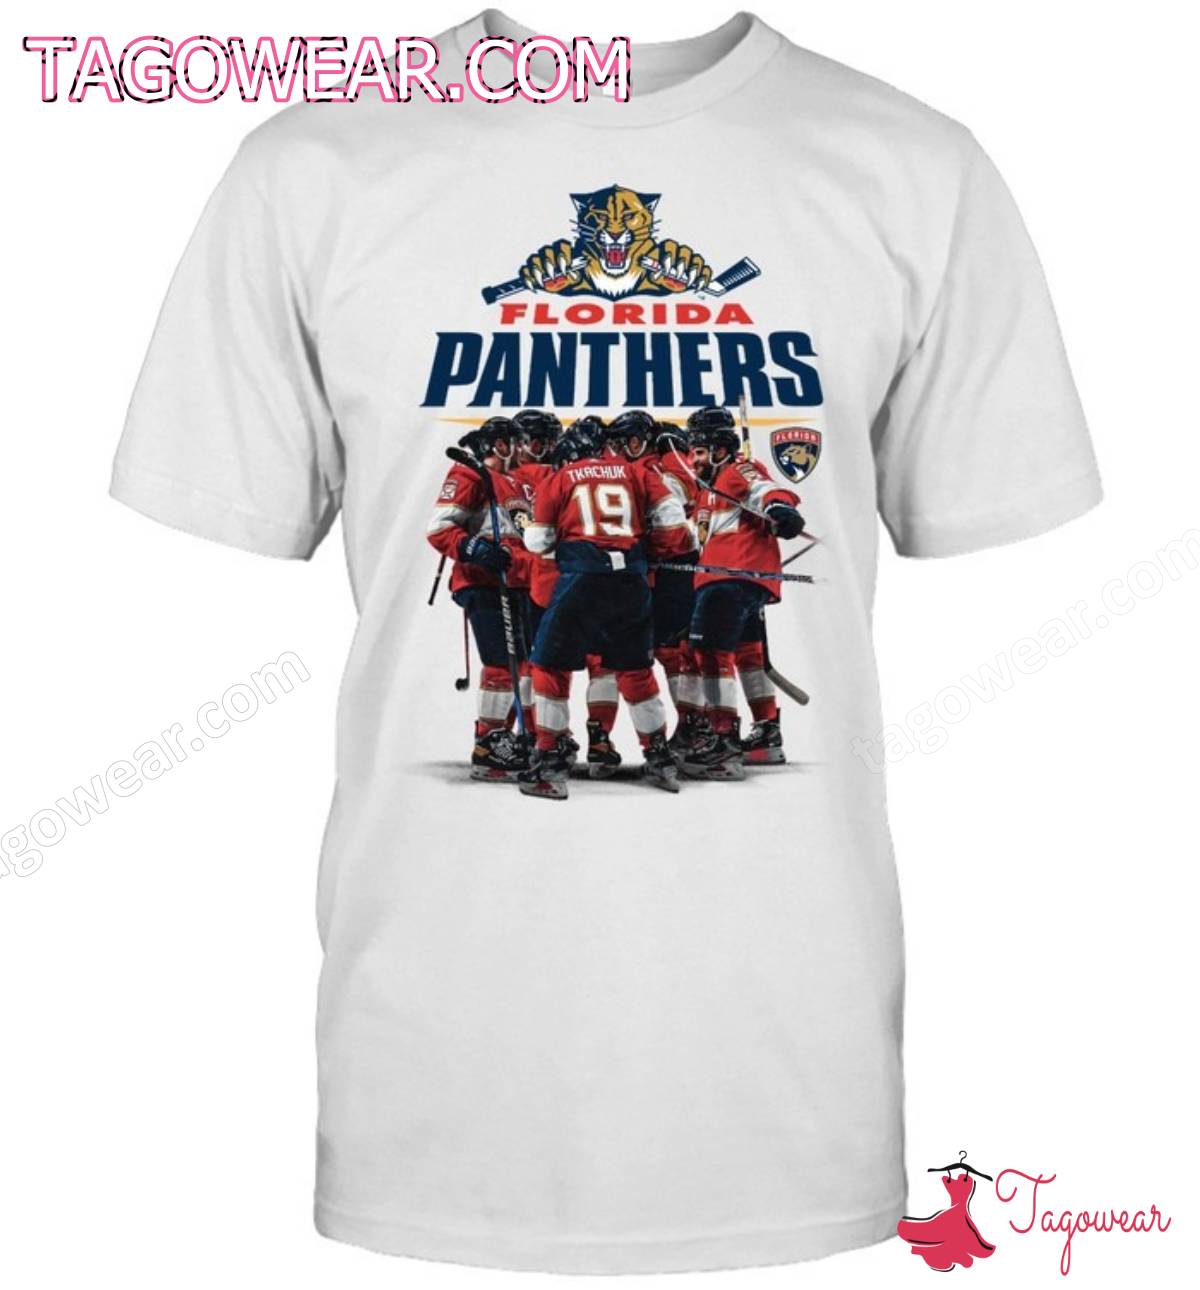 Florida Panthers Team Shirt, Tank Top